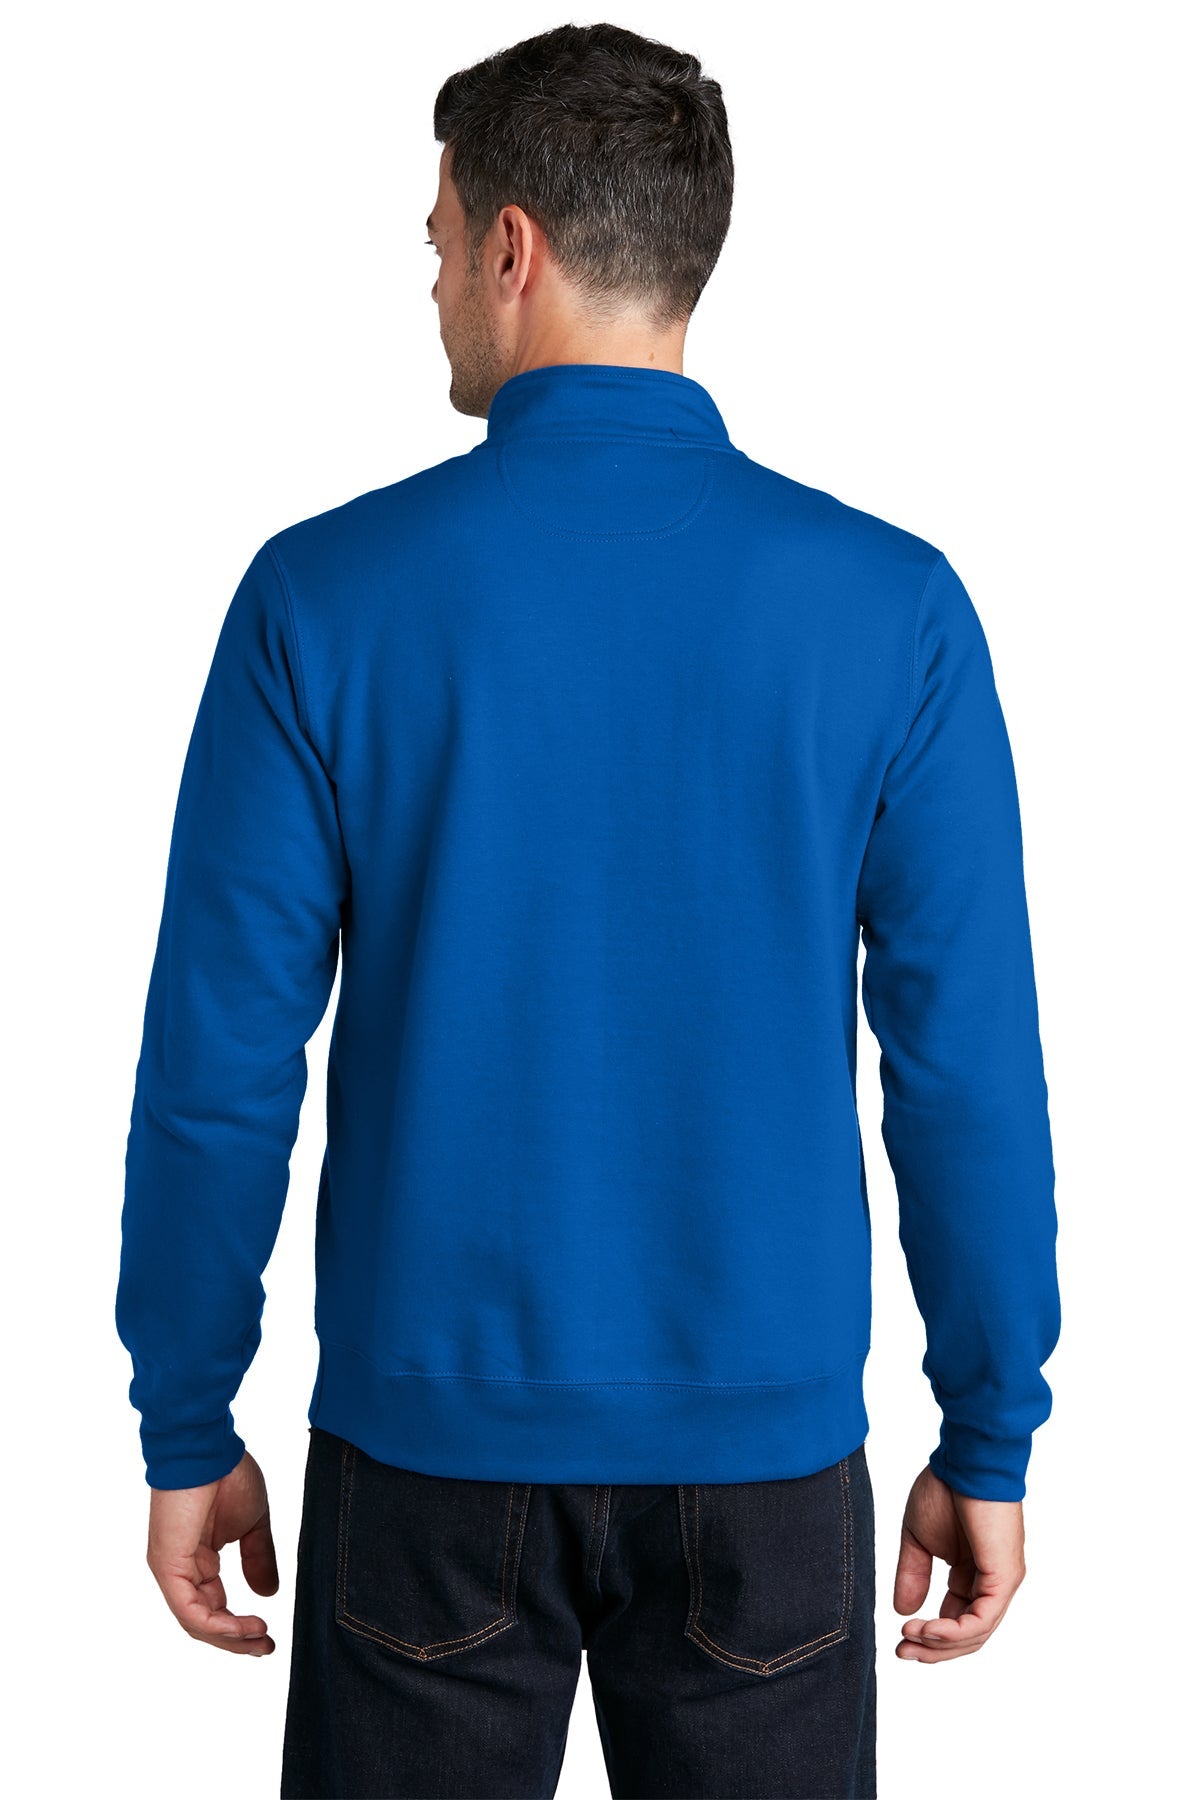 Port & Company Fan Favorite Fleece 1/4-Zip Pullover Sweatshirt PC850Q True Royal